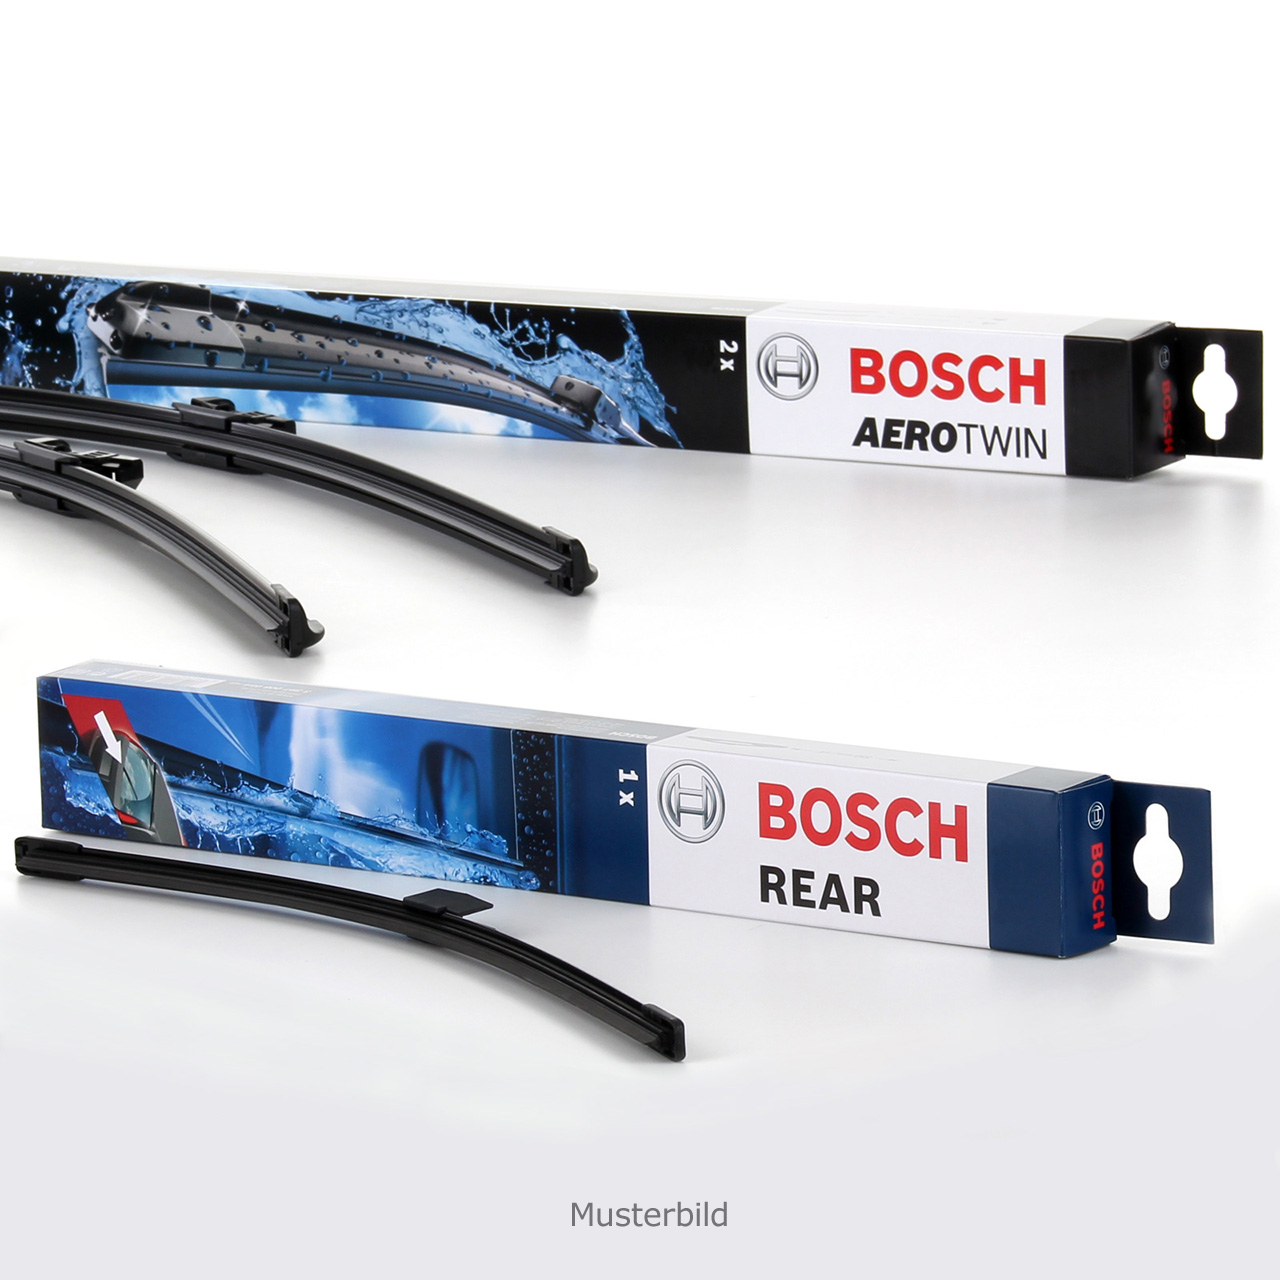 Bosch Aerotwin Scheibenwischer kaufen - Was muss ich beachten?